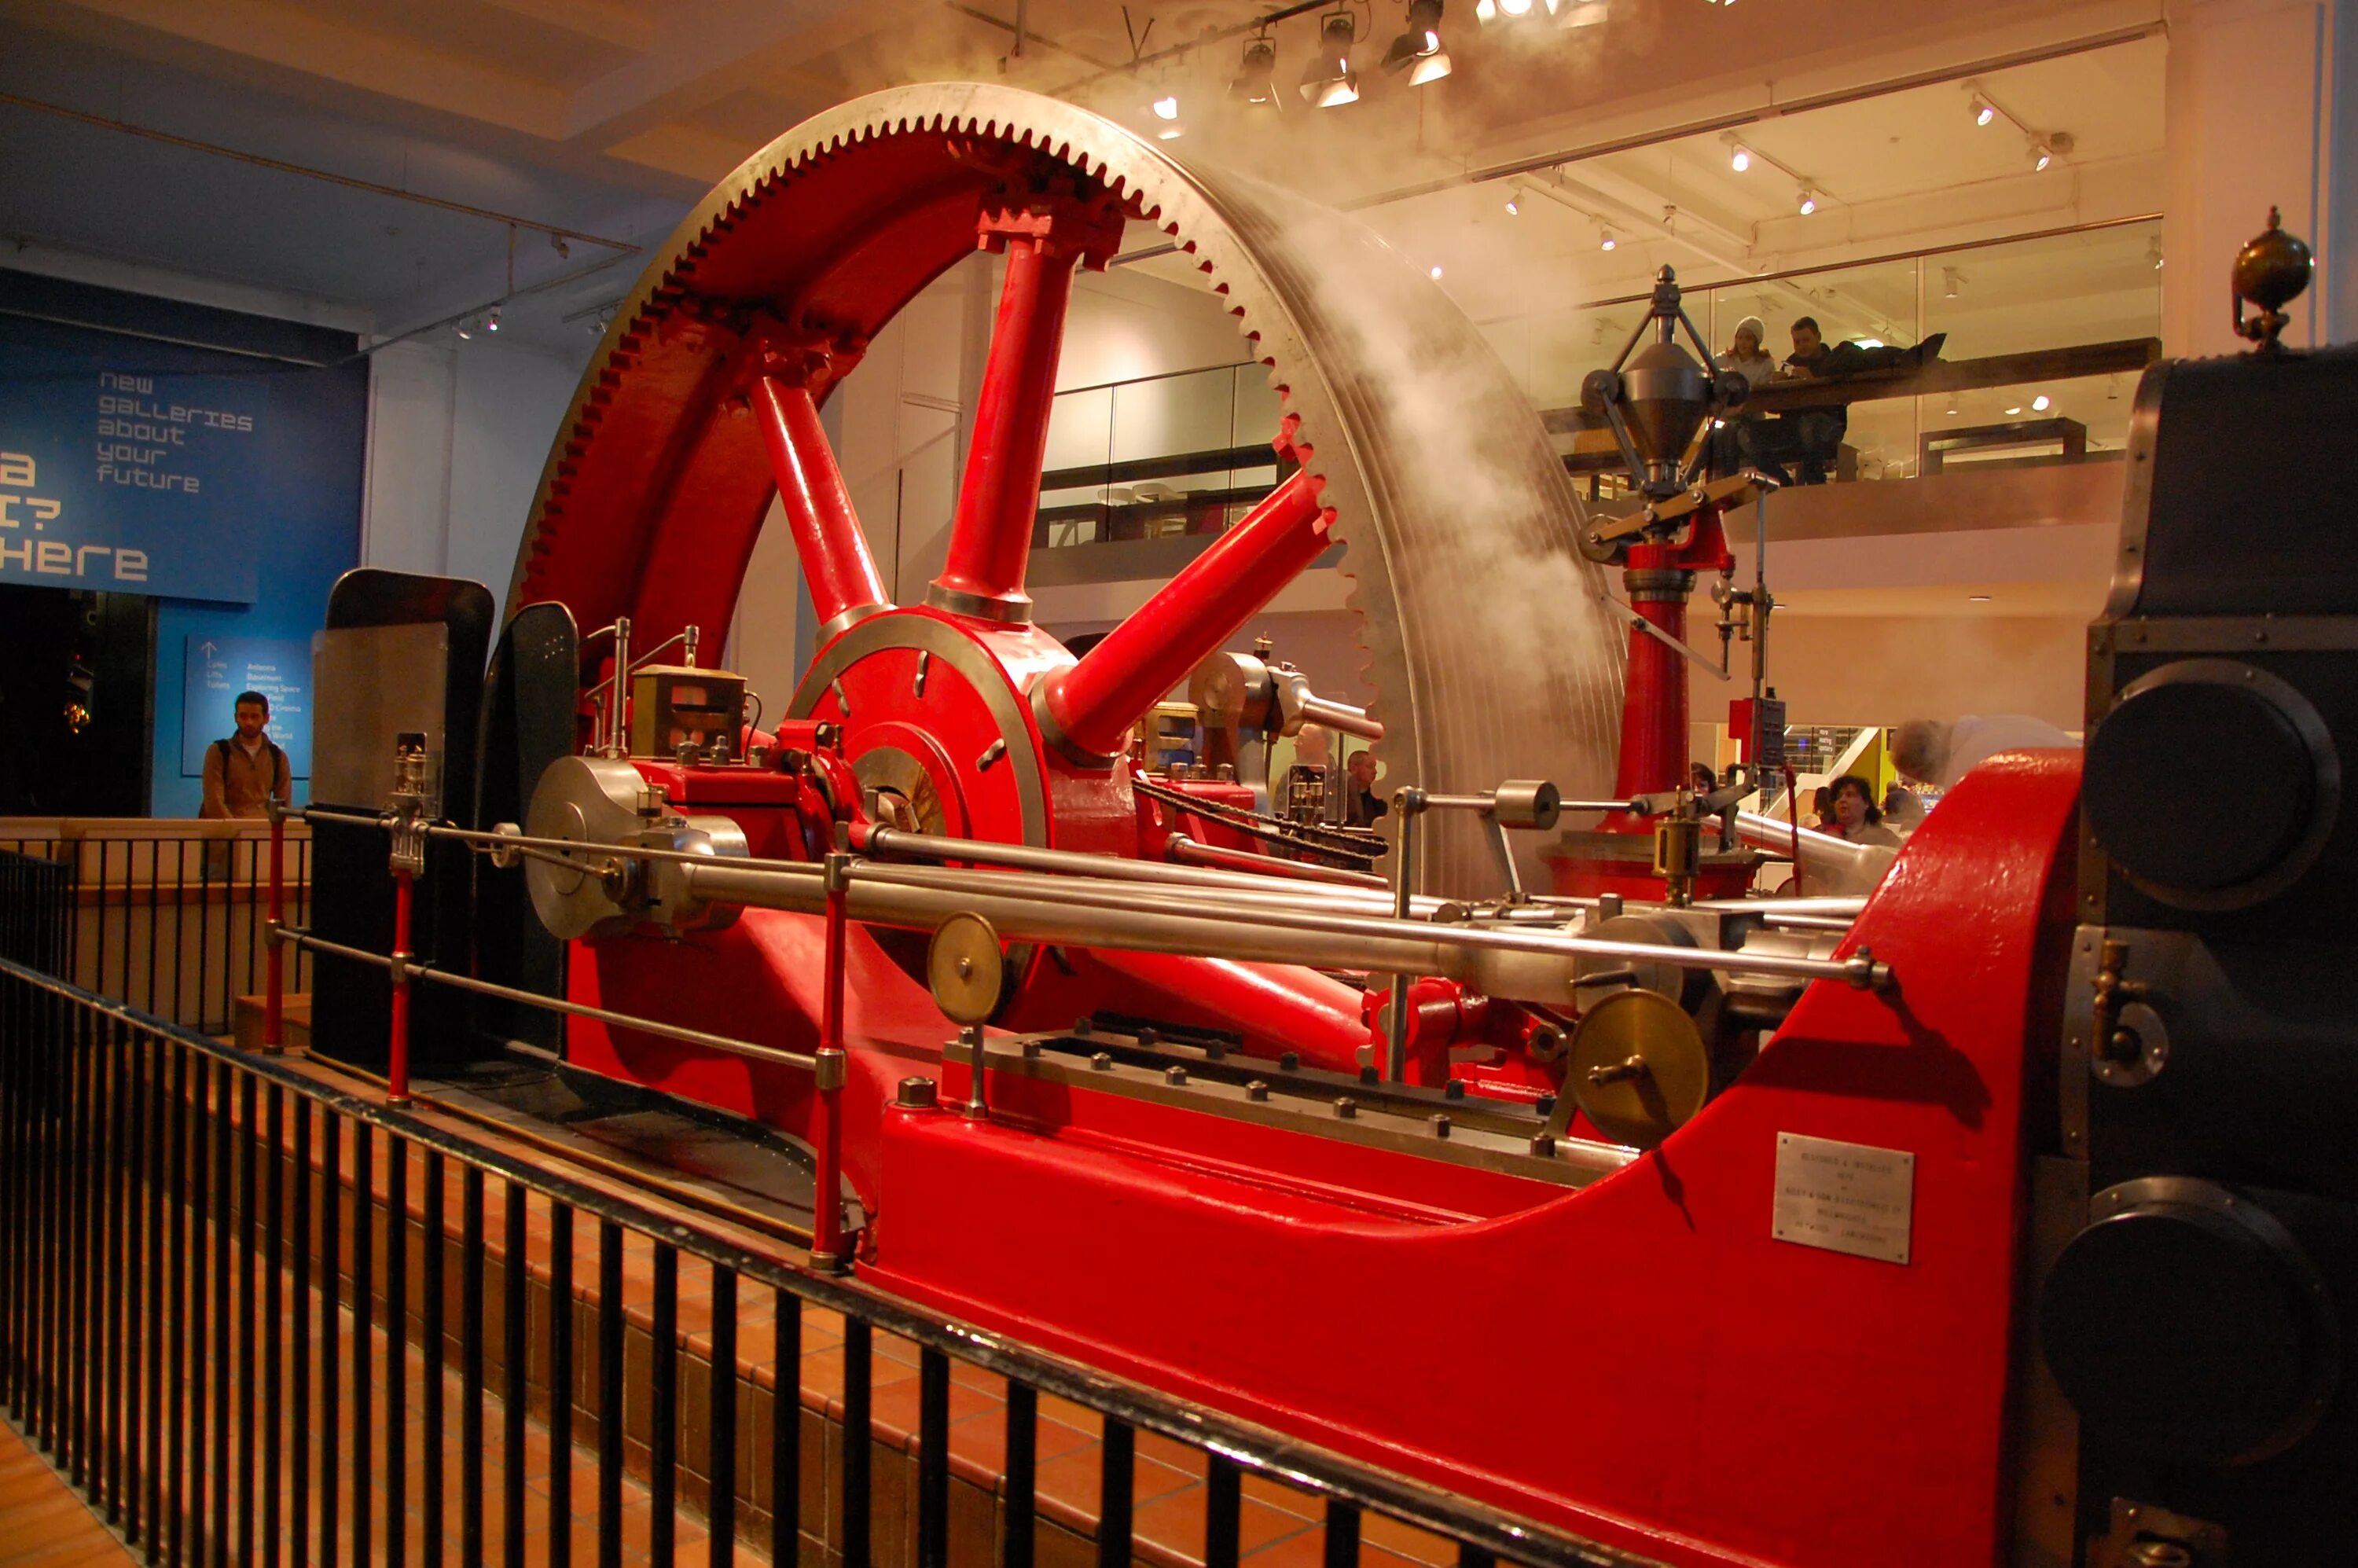 Музей в Лондоне с паровой машиной. Научный музей Британии. Музей науки в Лондоне. Научный музей в Лондоне зал паровых машин. Идеальная паровая машина